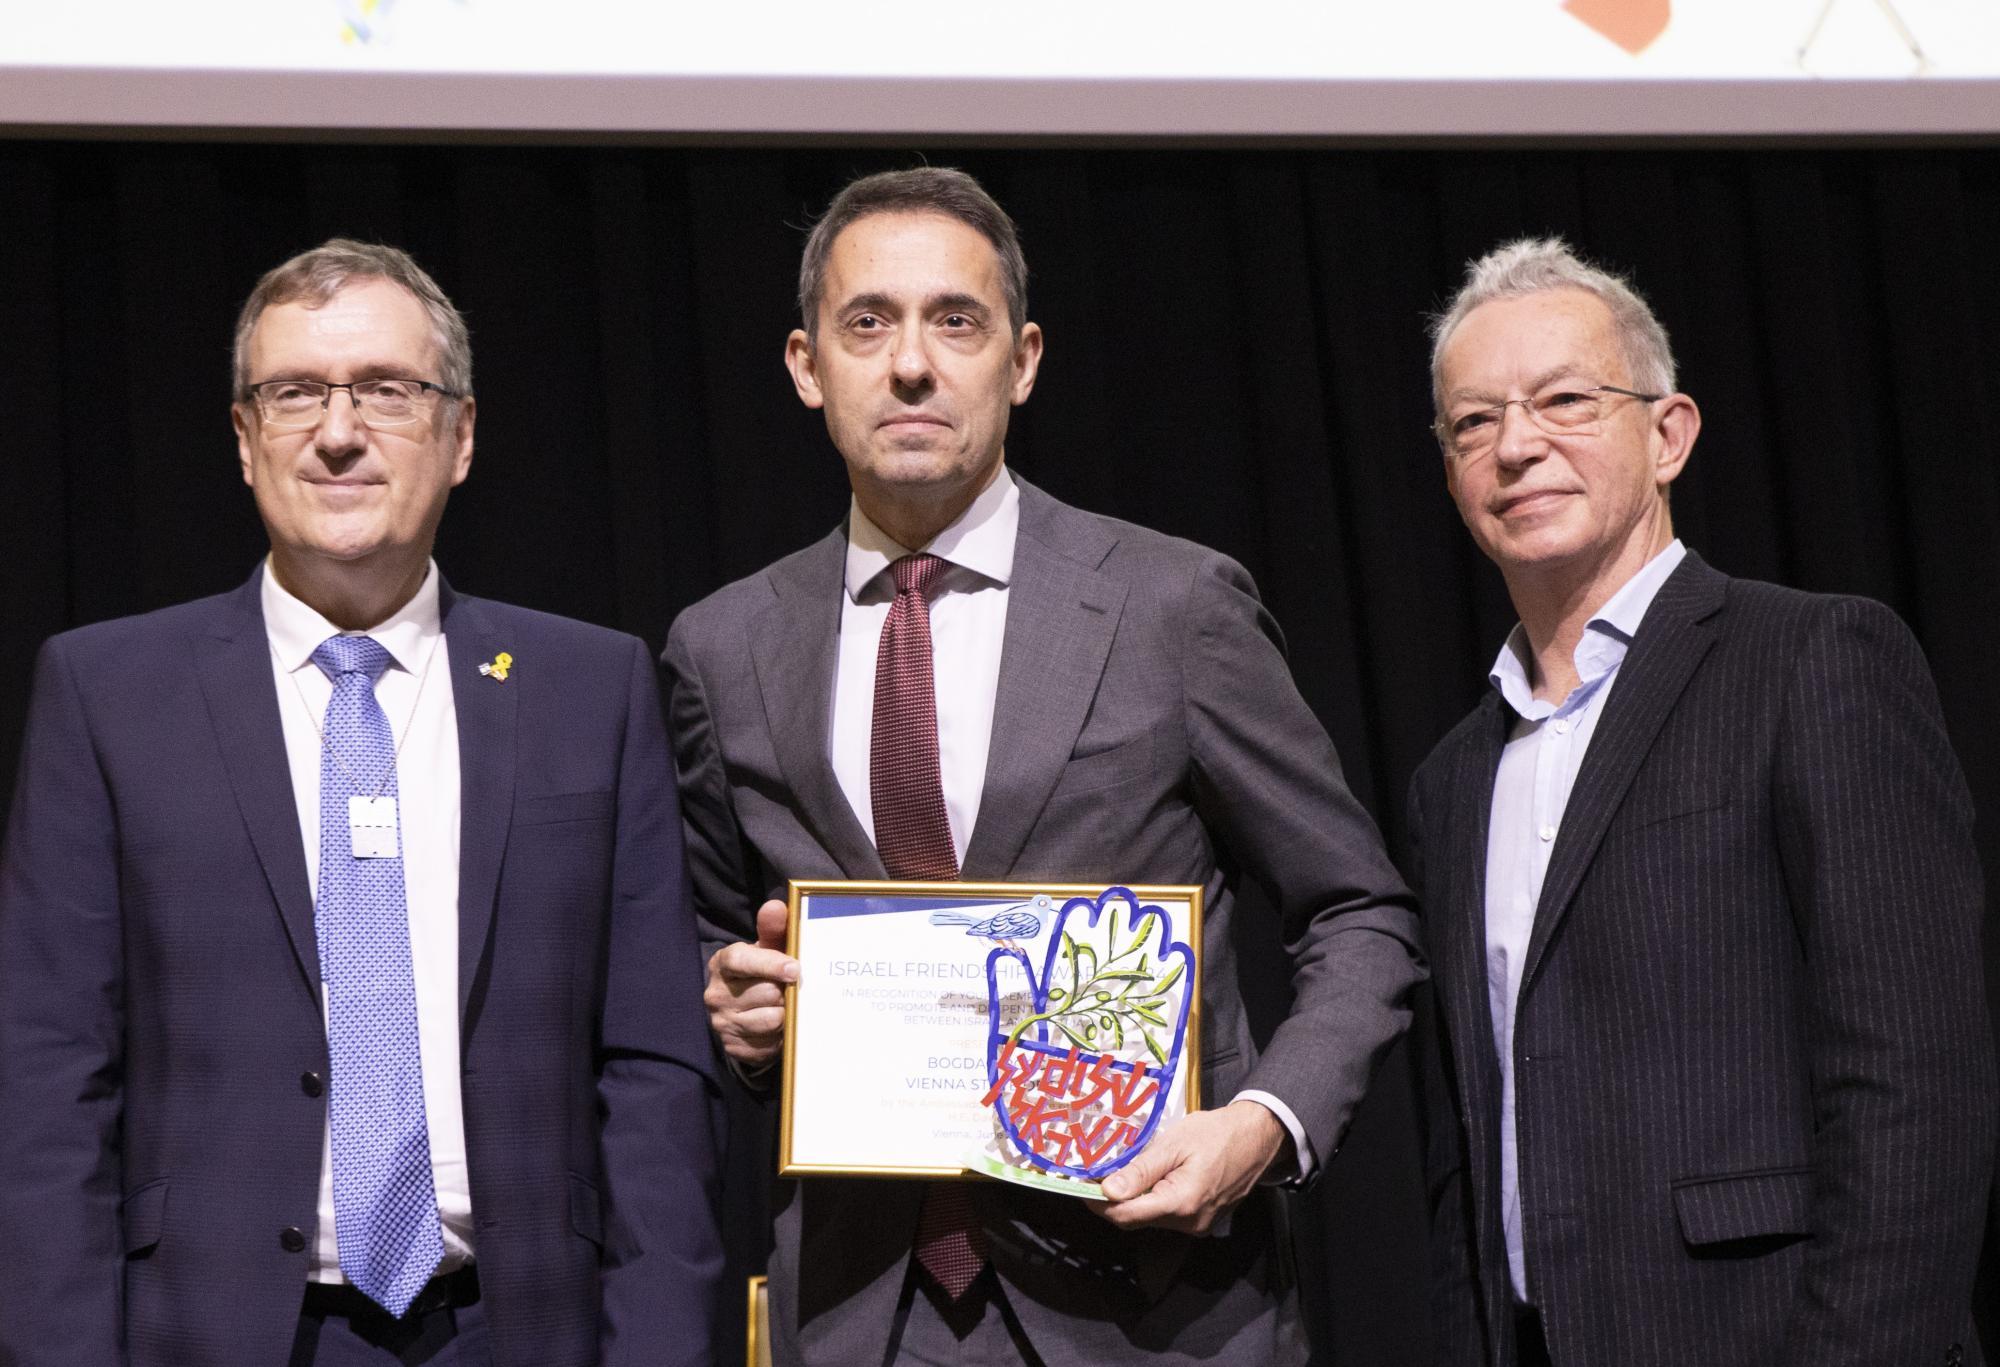 Staatsoperndirektor Bogdad Roščić erhält Israel Friendship Award